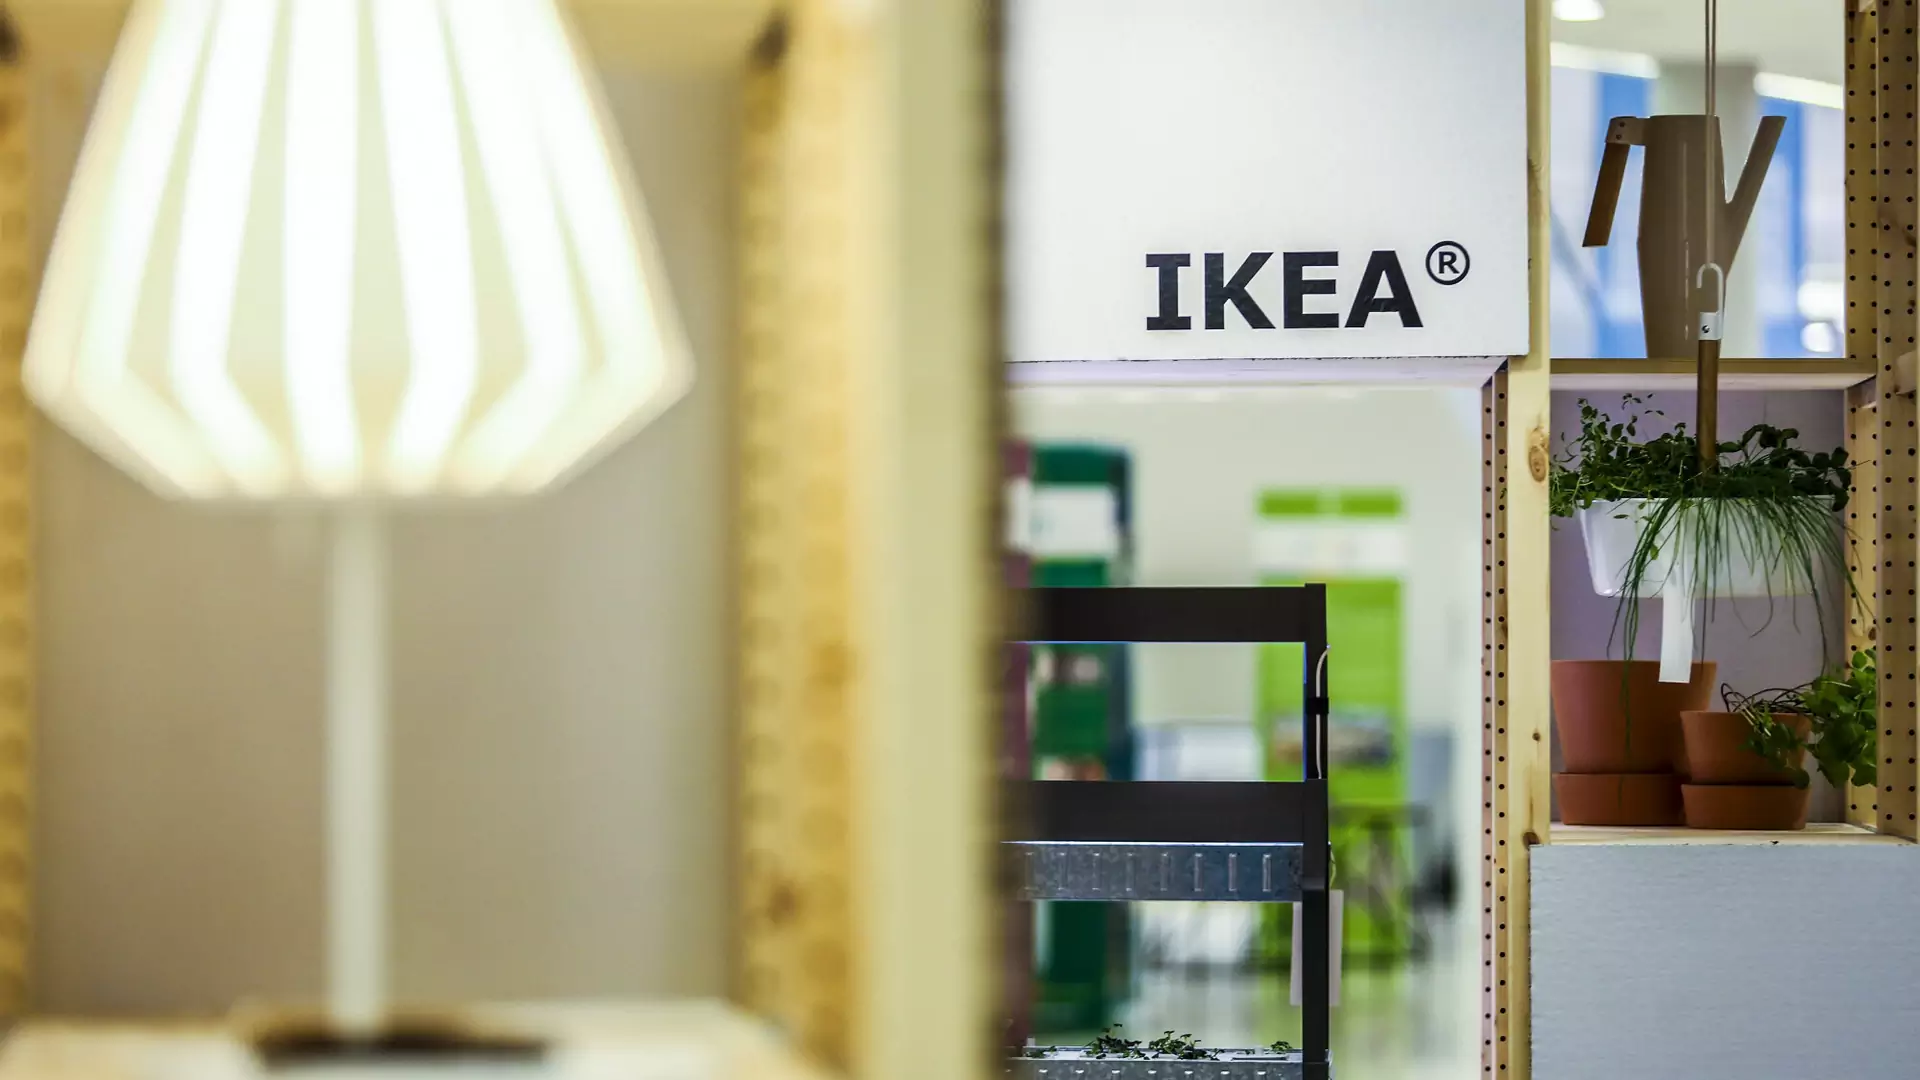 Potwierdzono, że składanie mebli IKEA wywołuje stres. Polska w czołówce rankingu